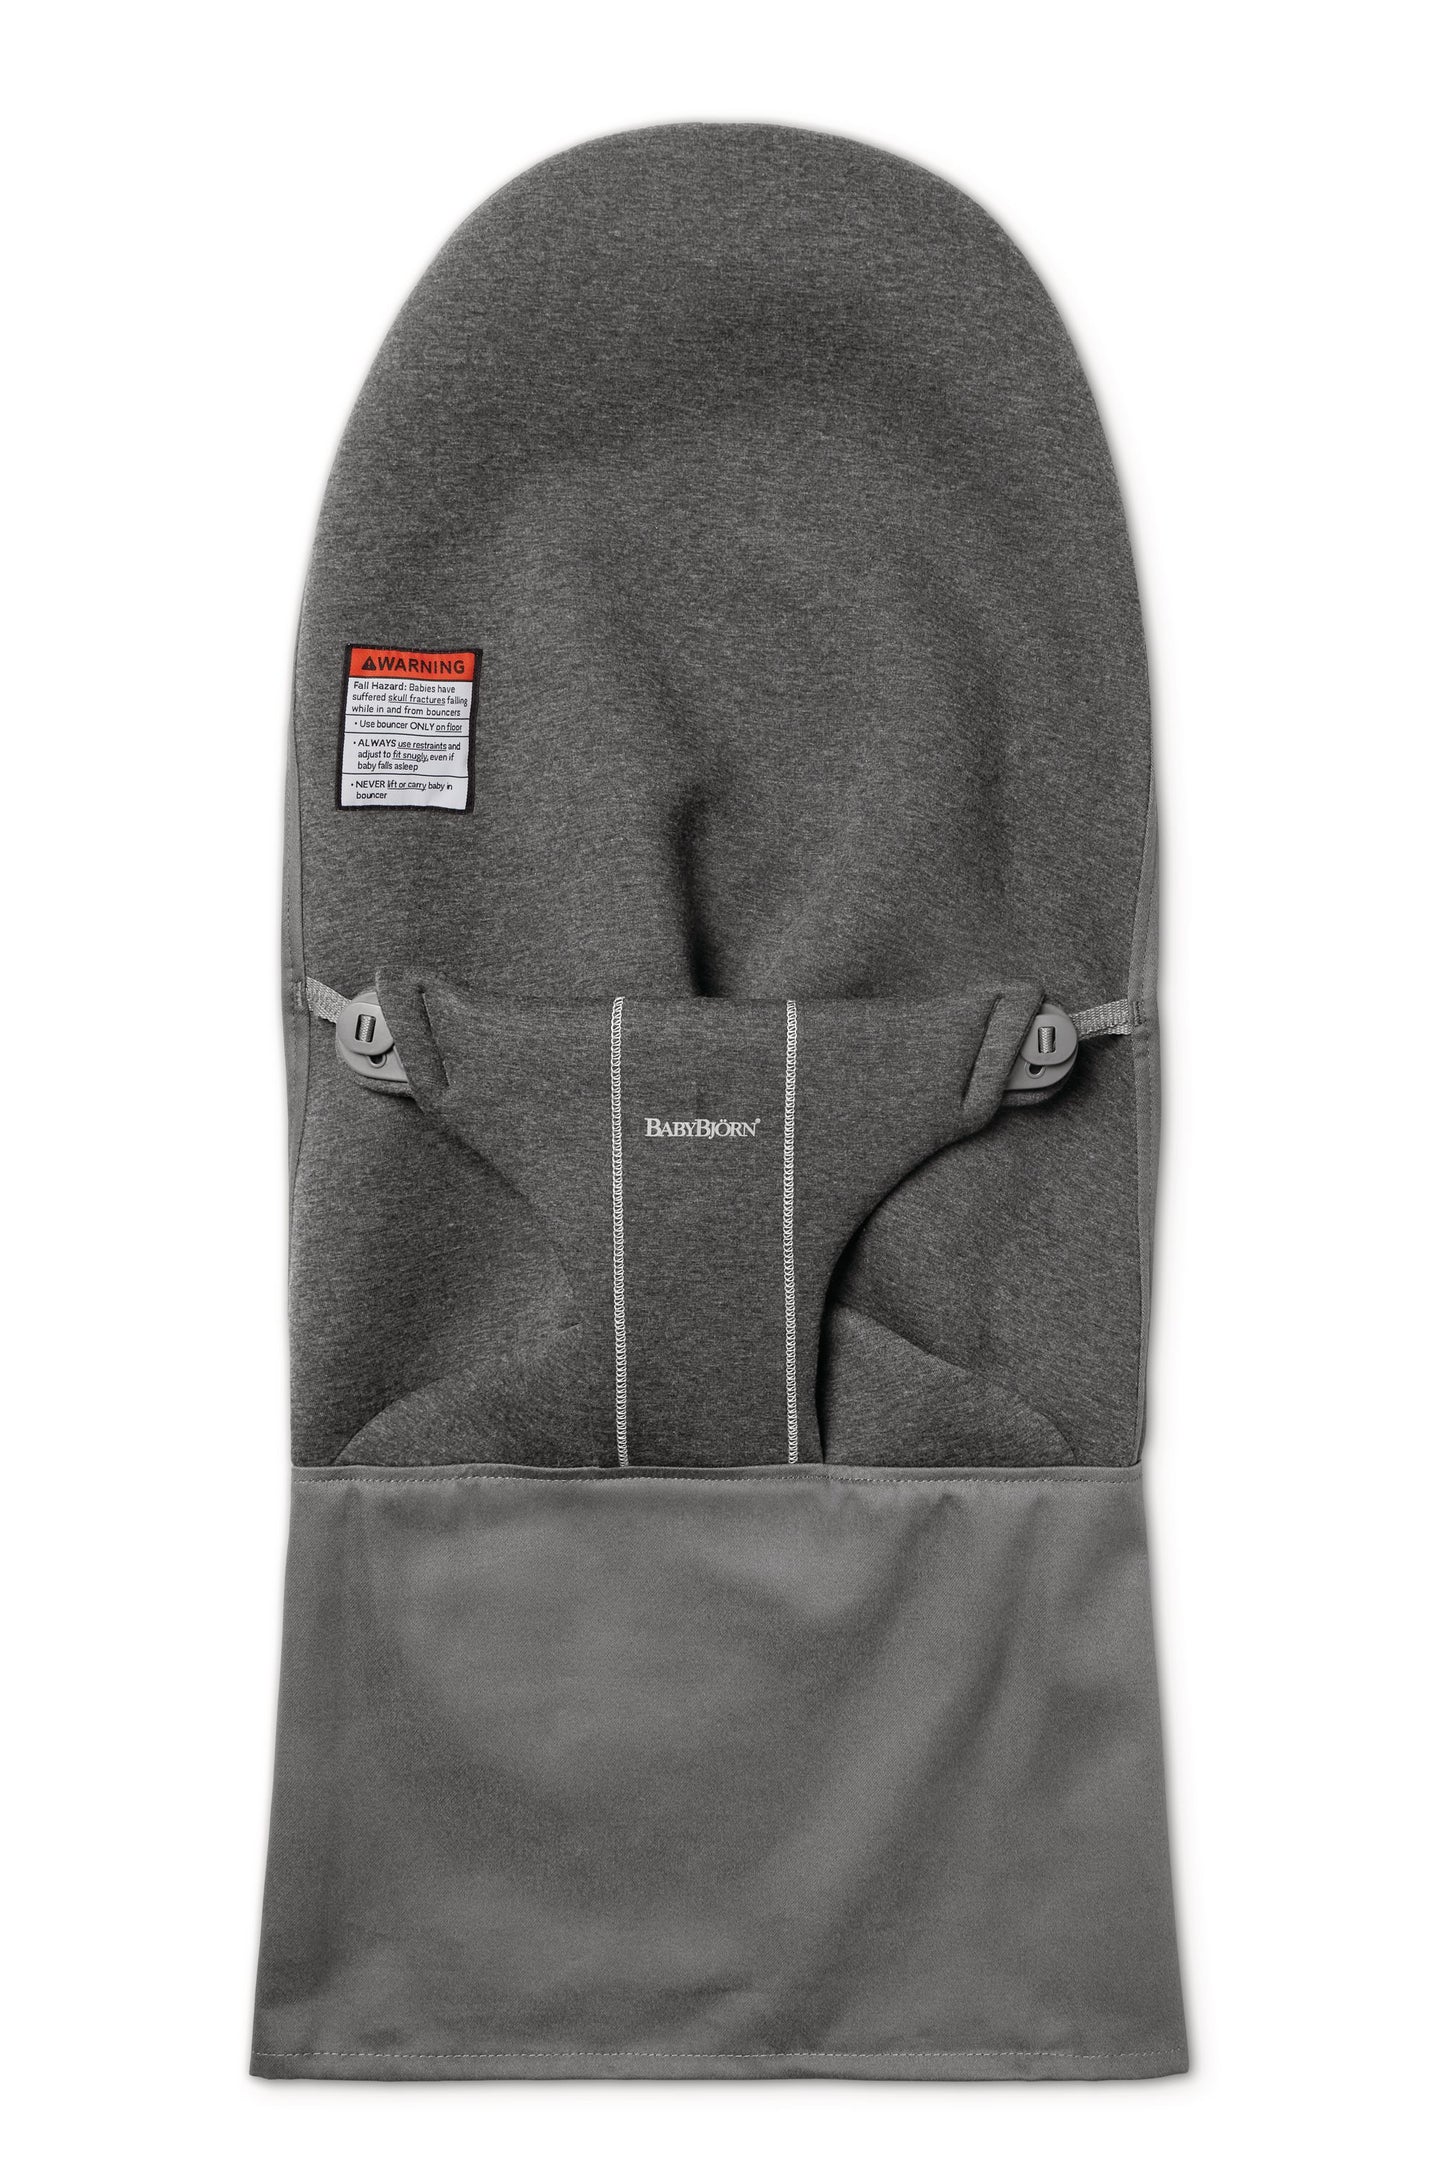 Fabric Seat Bouncer Bliss -Charcoal Grey, 3D Jersey (باللغة الإنجليزية)